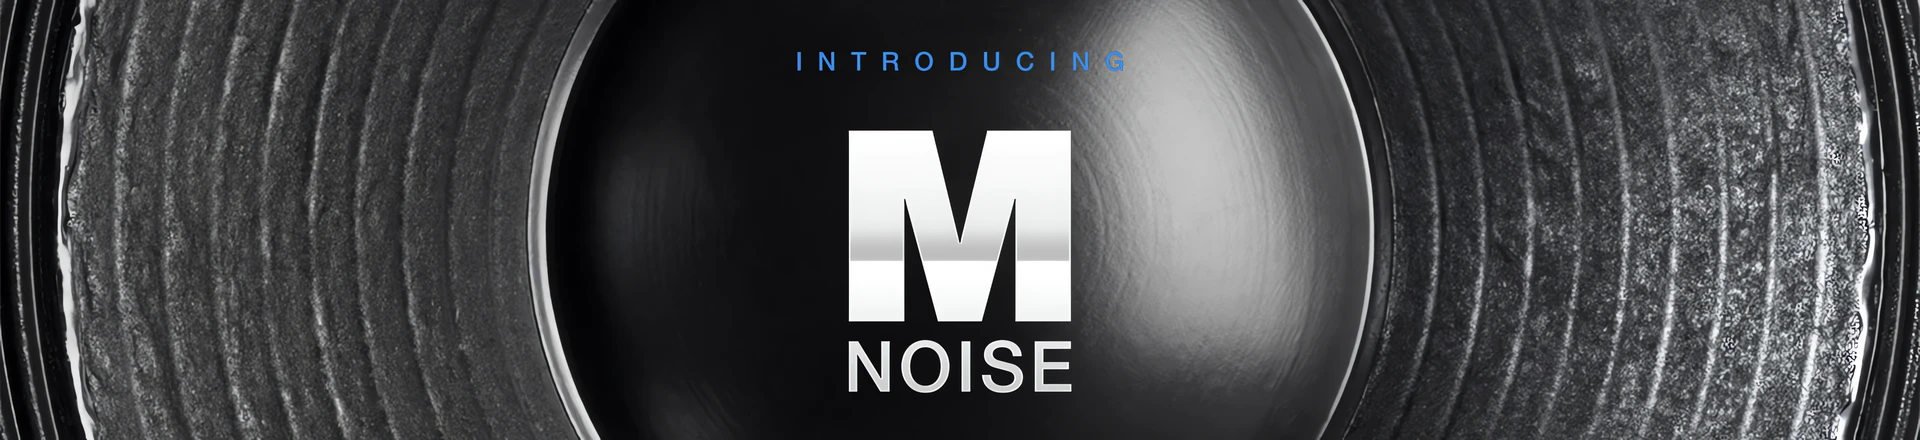 NAMM'19:  Rewolucyjny sygnał testowy M-Noise od Meyer Sound